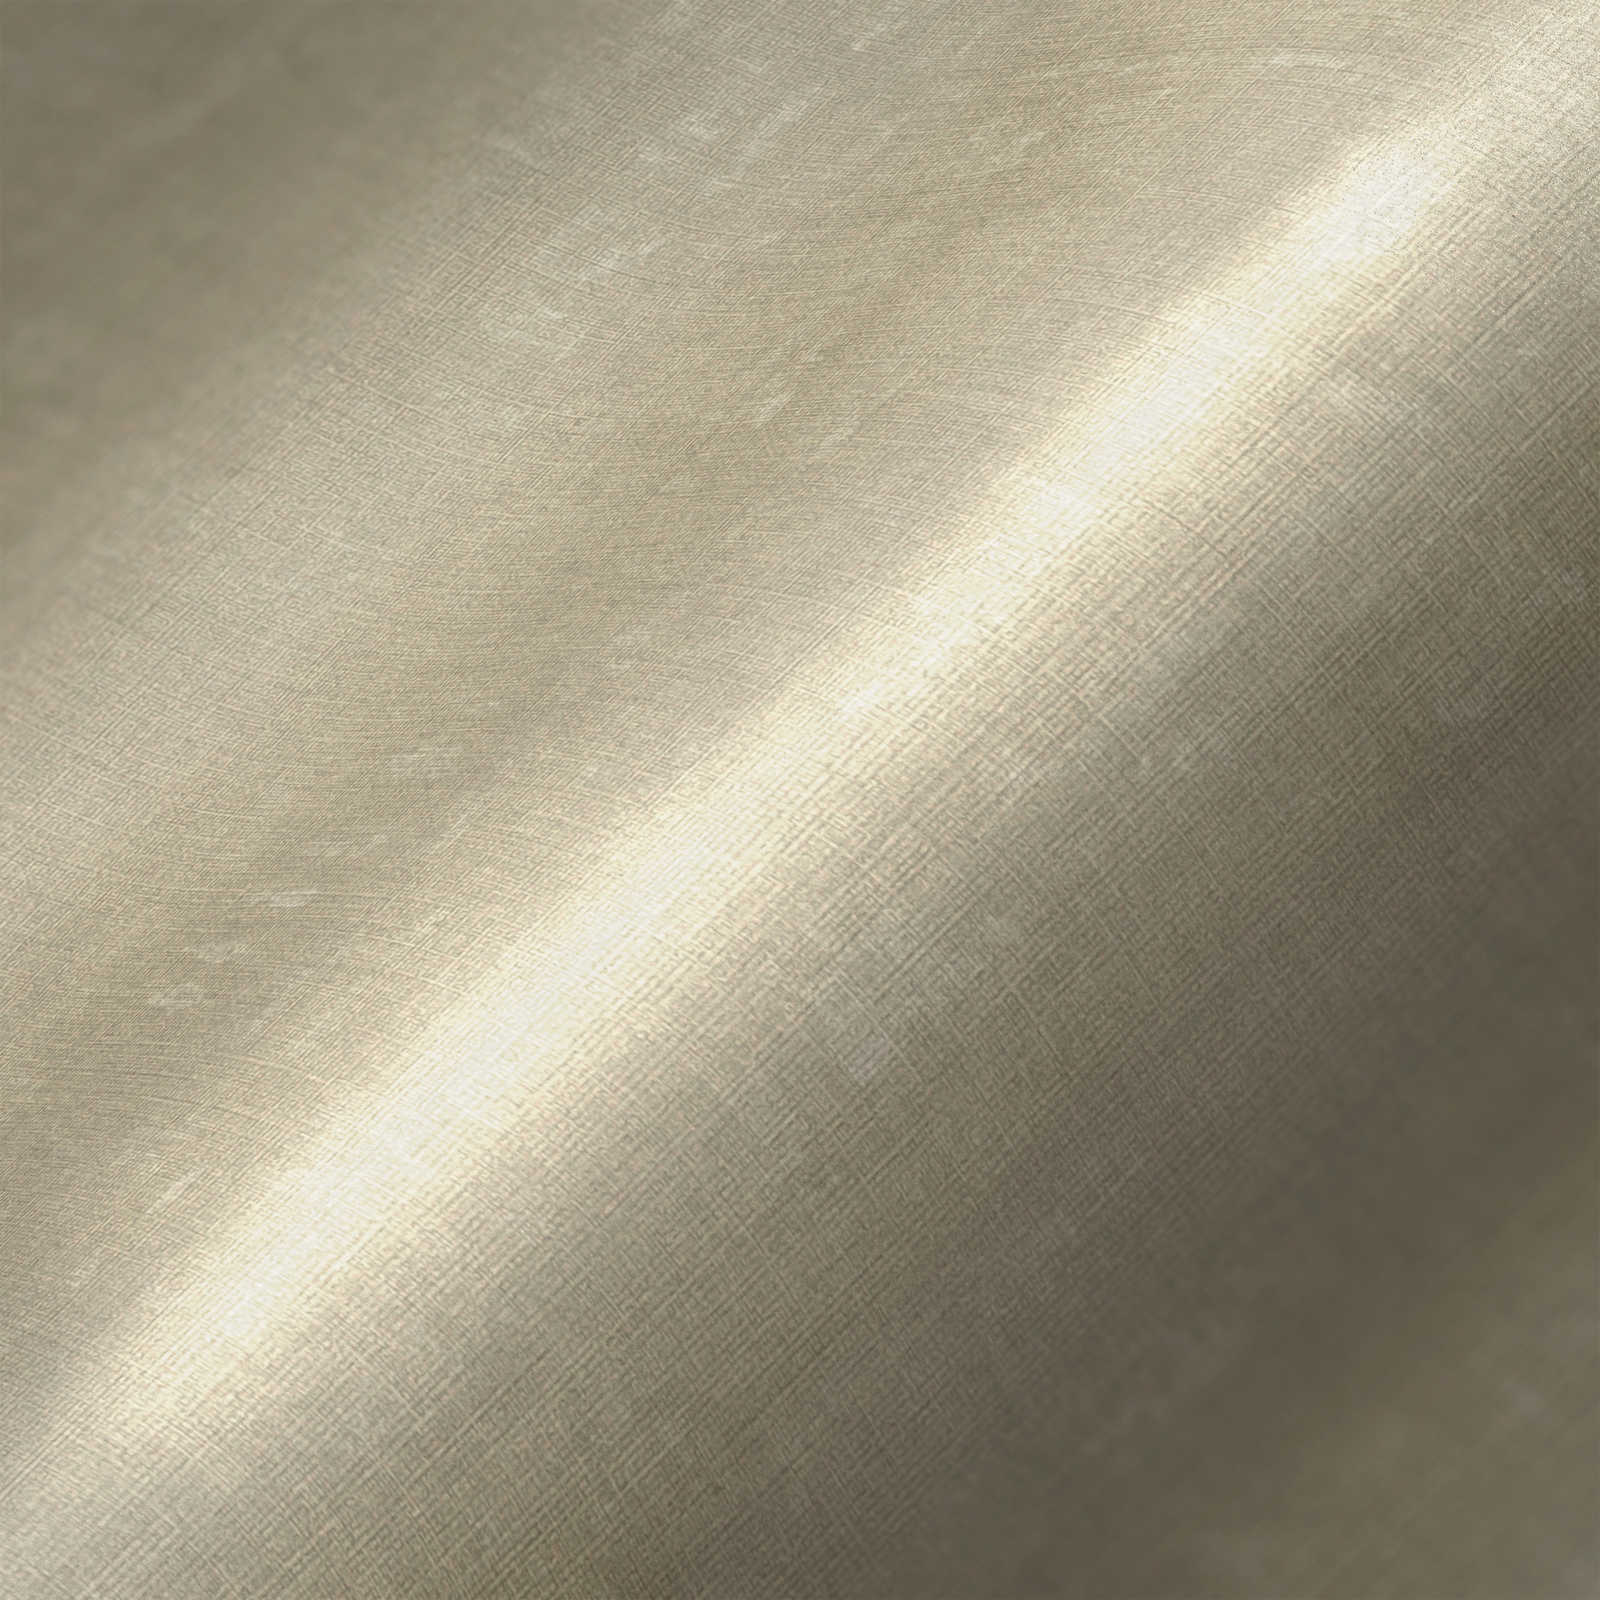             Vliestapete einfarbig mit Struktureffekt – Grau, Beige
        